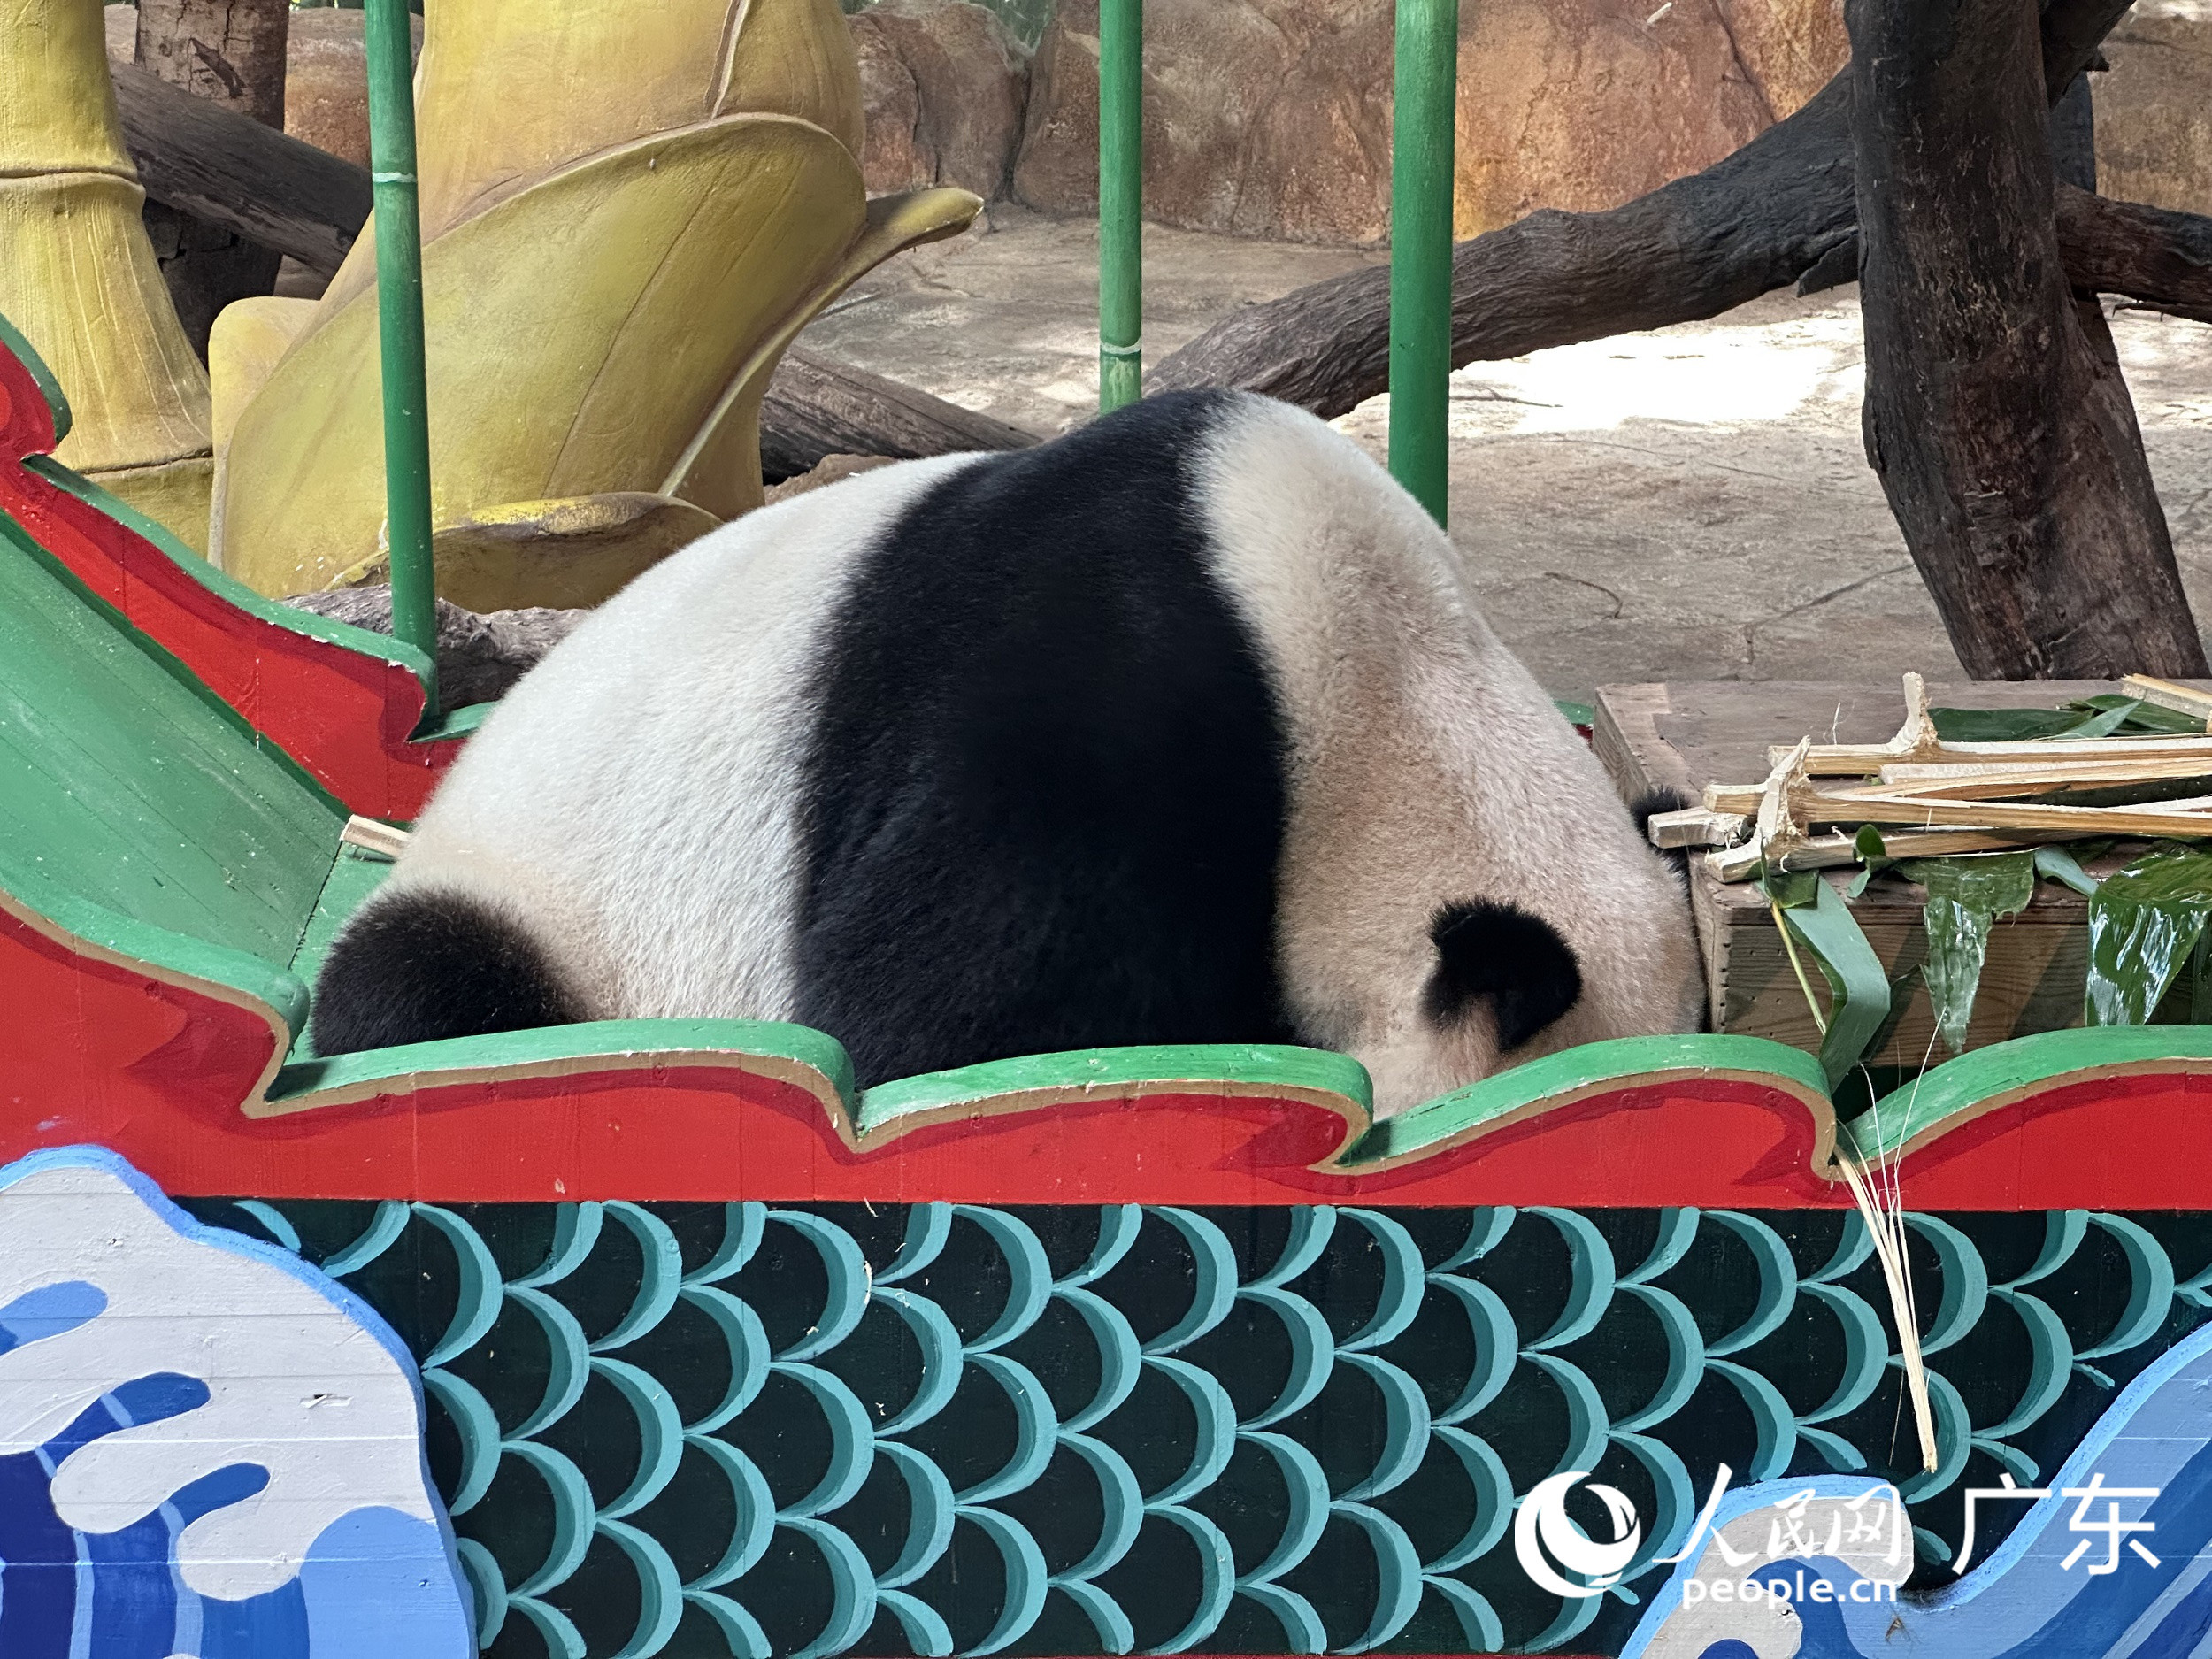 熊貓“帥帥”在低頭尋找掉落的竹筍。人民網 周睿攝